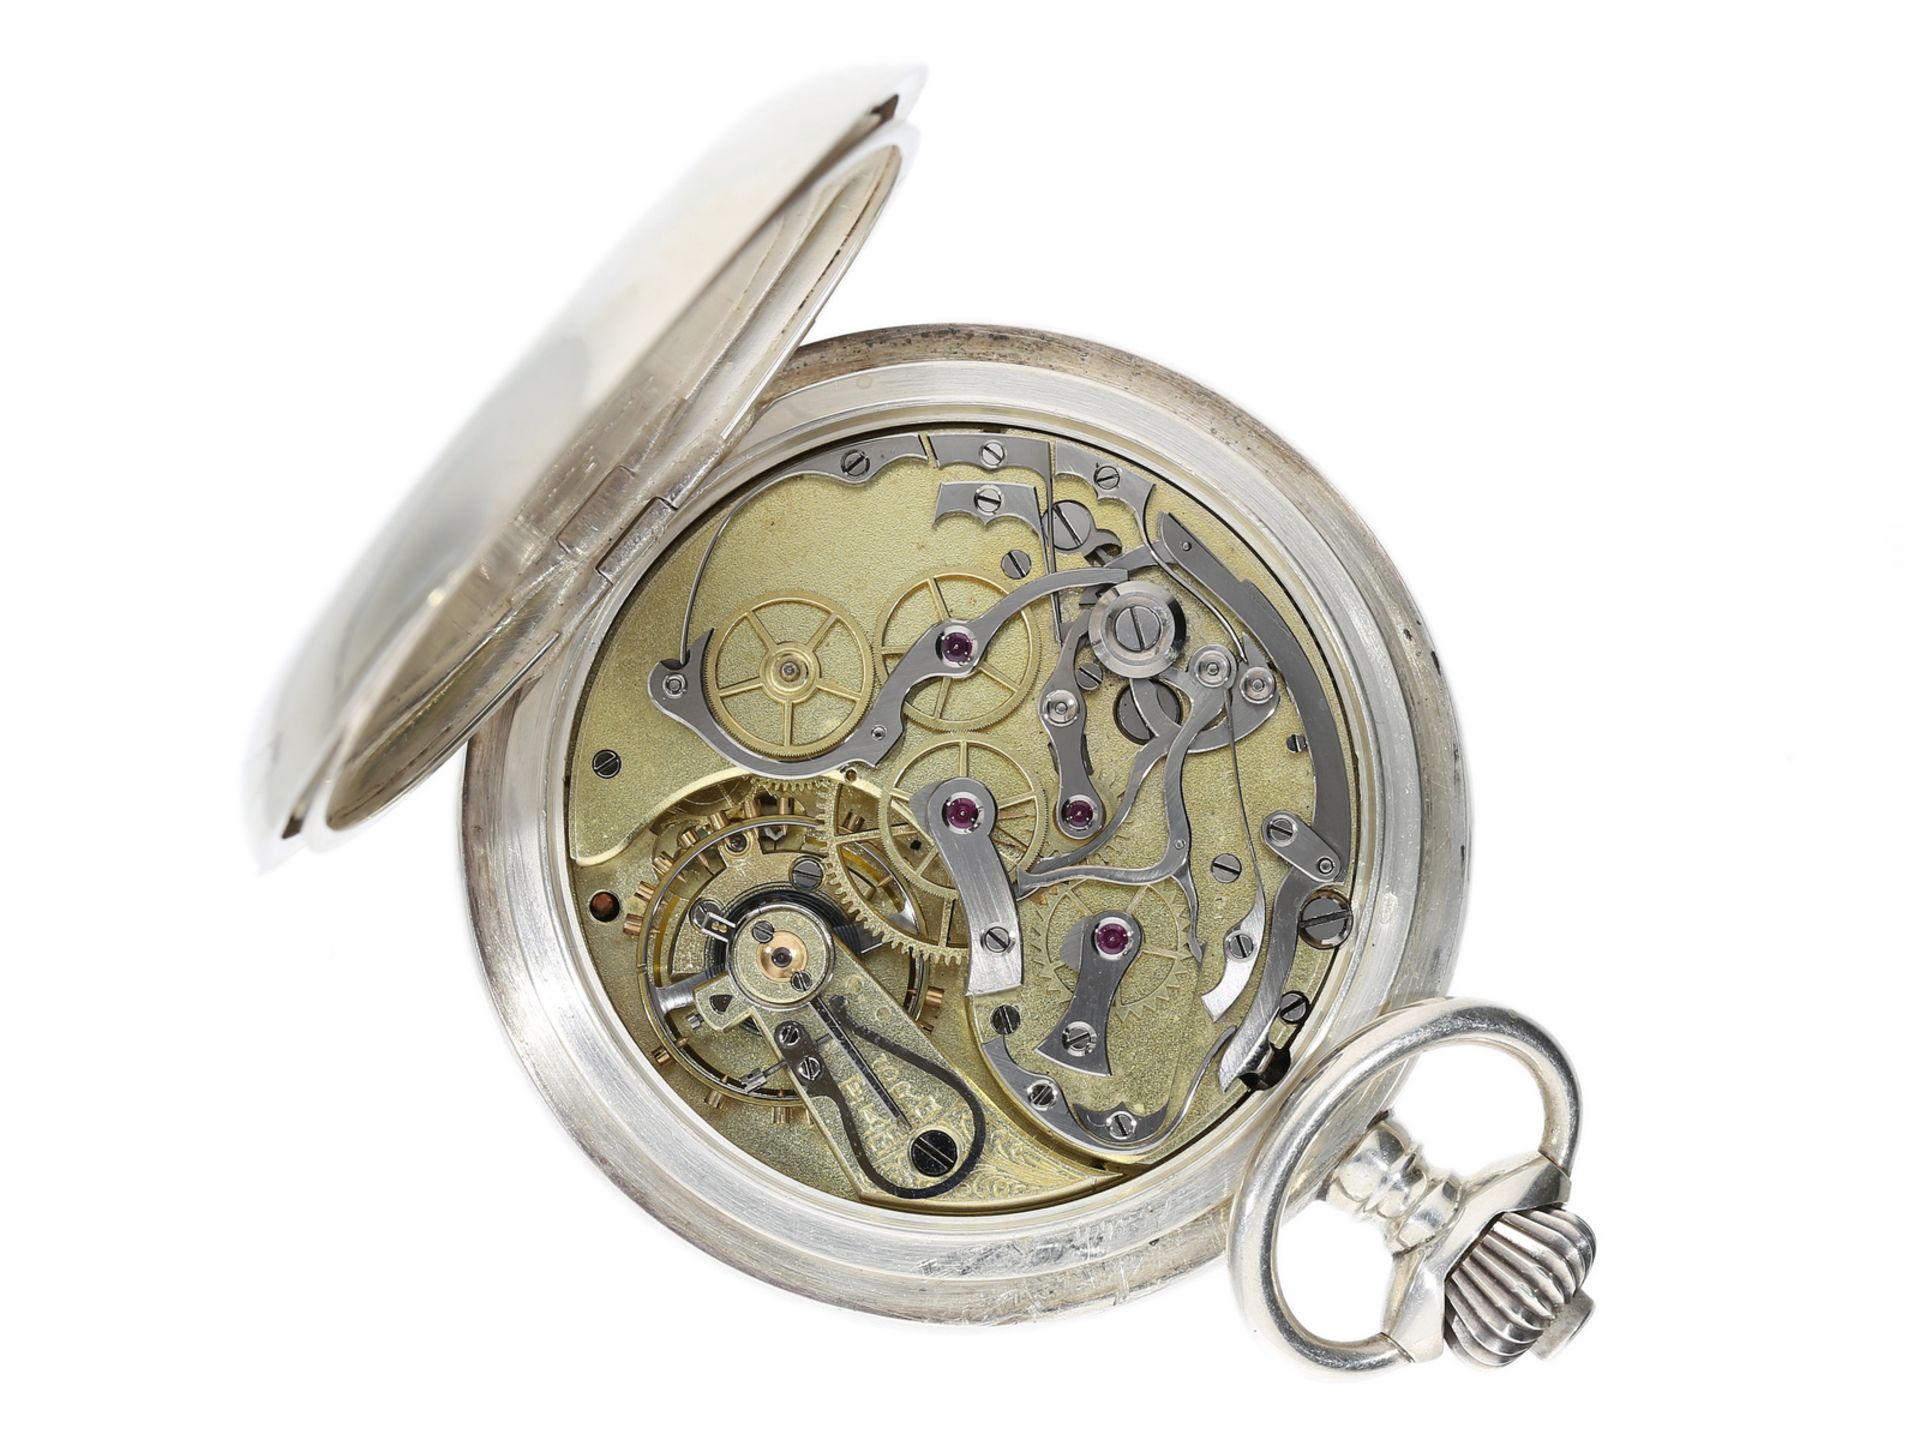 Taschenuhr: qualitätsvoller, großer Chronograph mit Silbergehäuse, ca. 1900 - Bild 5 aus 5